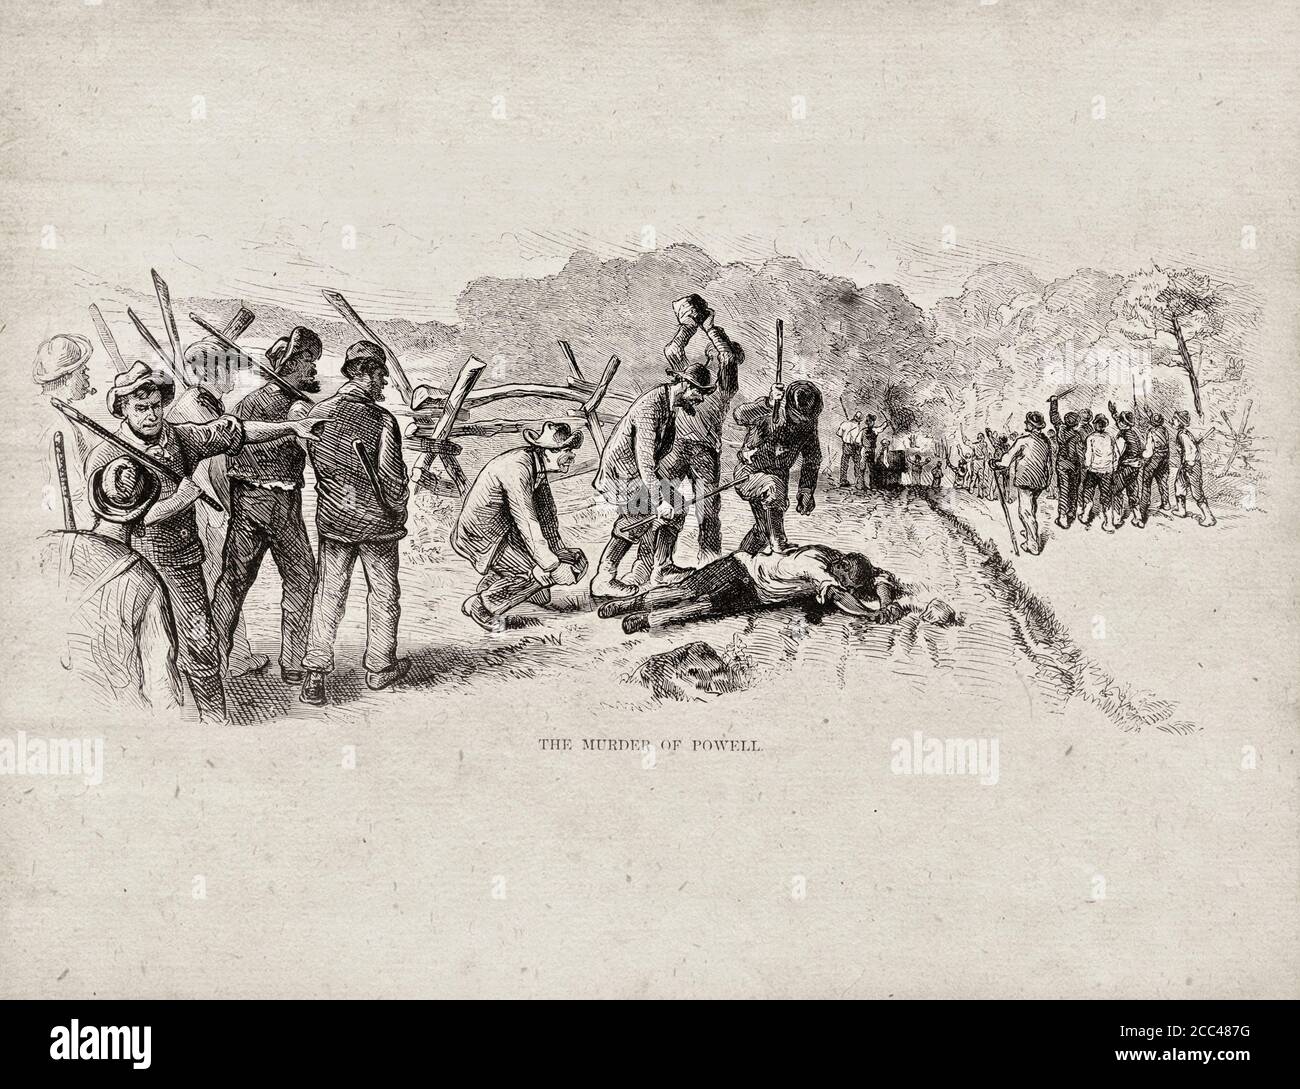 Le meurtre de Powell. ÉTATS-UNIS. 1872 l'illustration montre un groupe de travailleurs immigrants irlandais avec des clubs debout sur le corps de l'ouvrier afro-américain de Banque D'Images